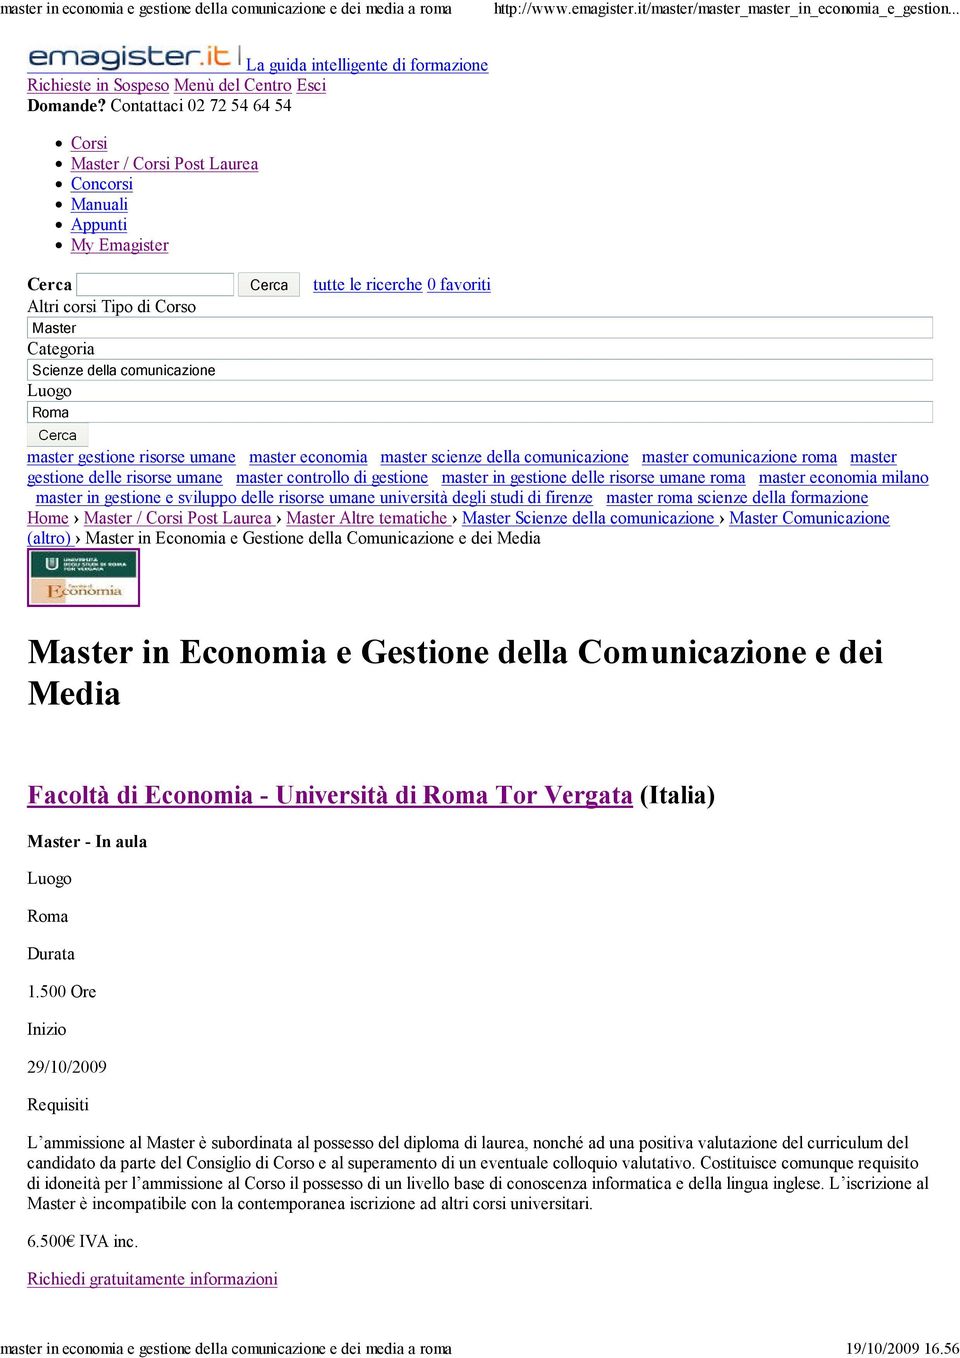 comunicazione Luogo Roma master gestione risorse umane master economia master scienze della comunicazione master comunicazione roma master gestione delle risorse umane master controllo di gestione